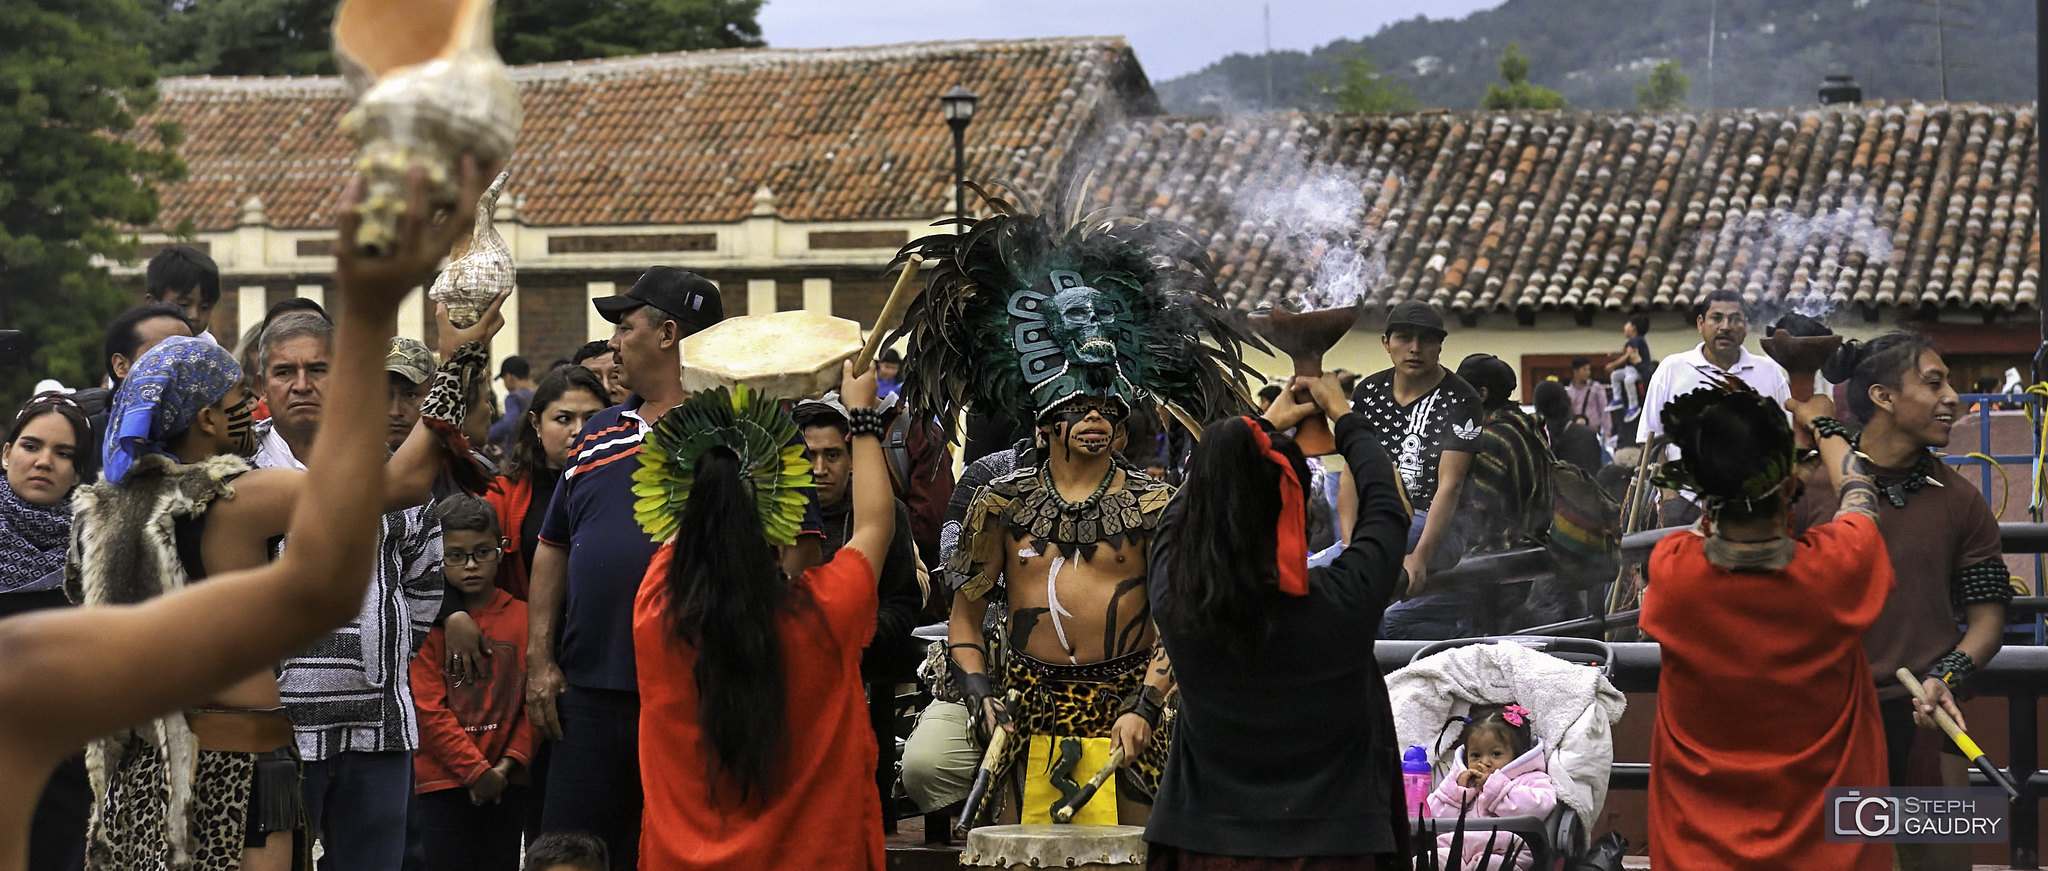 Danses rituelles à San Cristóbal de las Casas